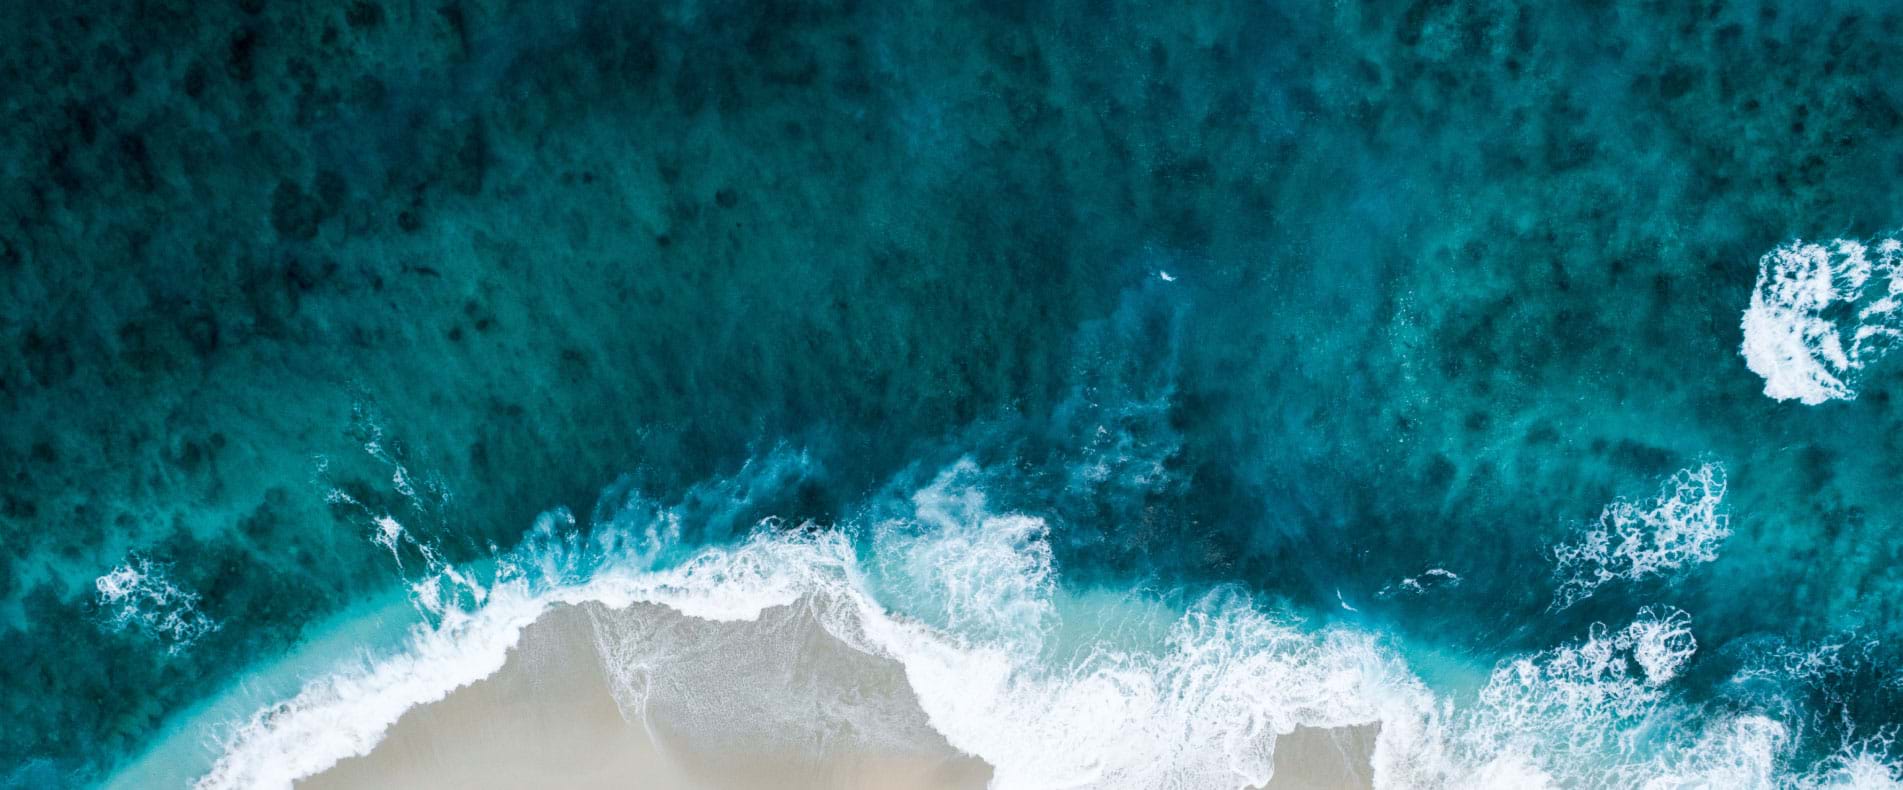 Maldives ocean beach aerial image